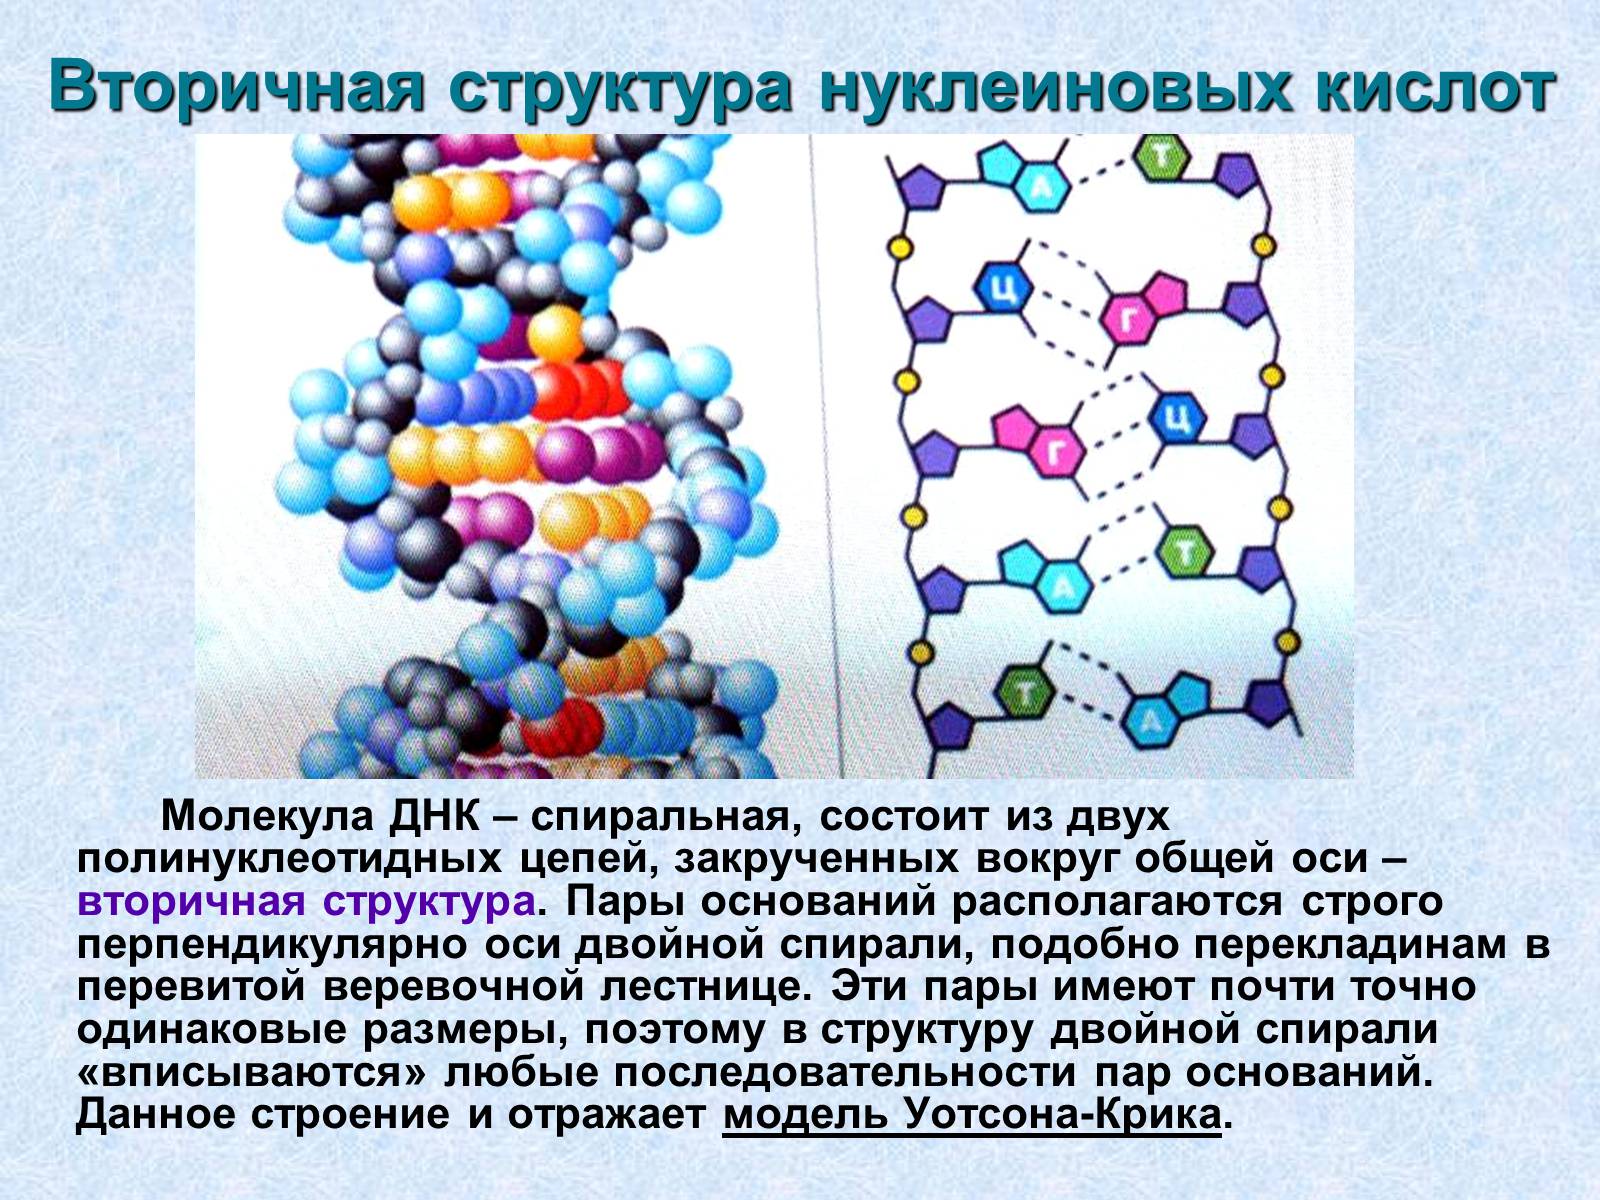 Структурная нуклеиновых кислот. Первичная вторичная и третичная структура нуклеиновых кислот. Первичная и вторичная структура нуклеиновых кислот. Первичная структура нуклеиновых кислот рисунок. Первичная и вторичная структура нуклеиновых кислот связи.